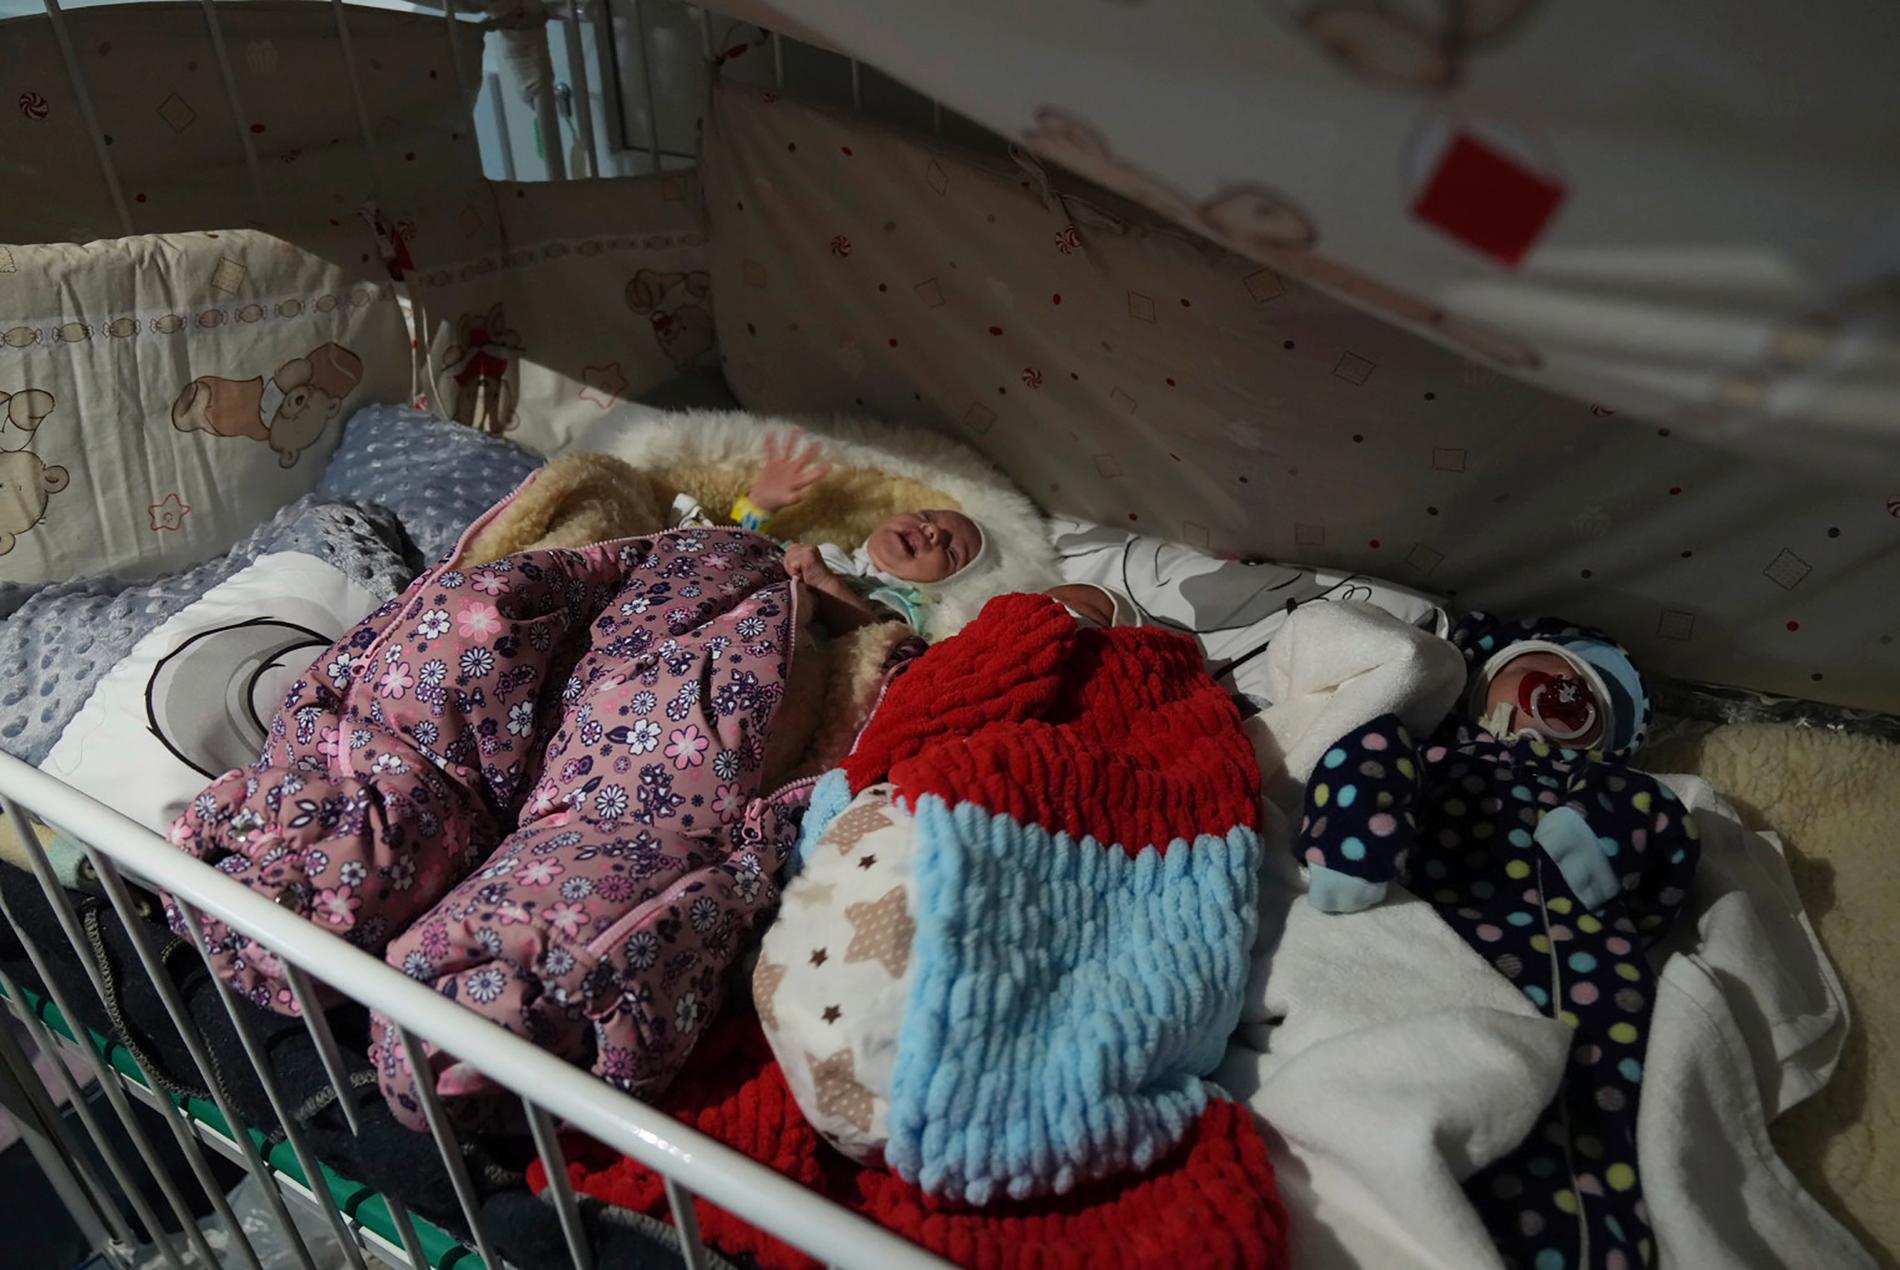  För tidigt födda barn i en säng på sjukhus nummer 3 i Mariupol. Enligt uppgifter har de blivit kvar utan sina föräldrar när sjukhuset bombades av ryska styrkor.